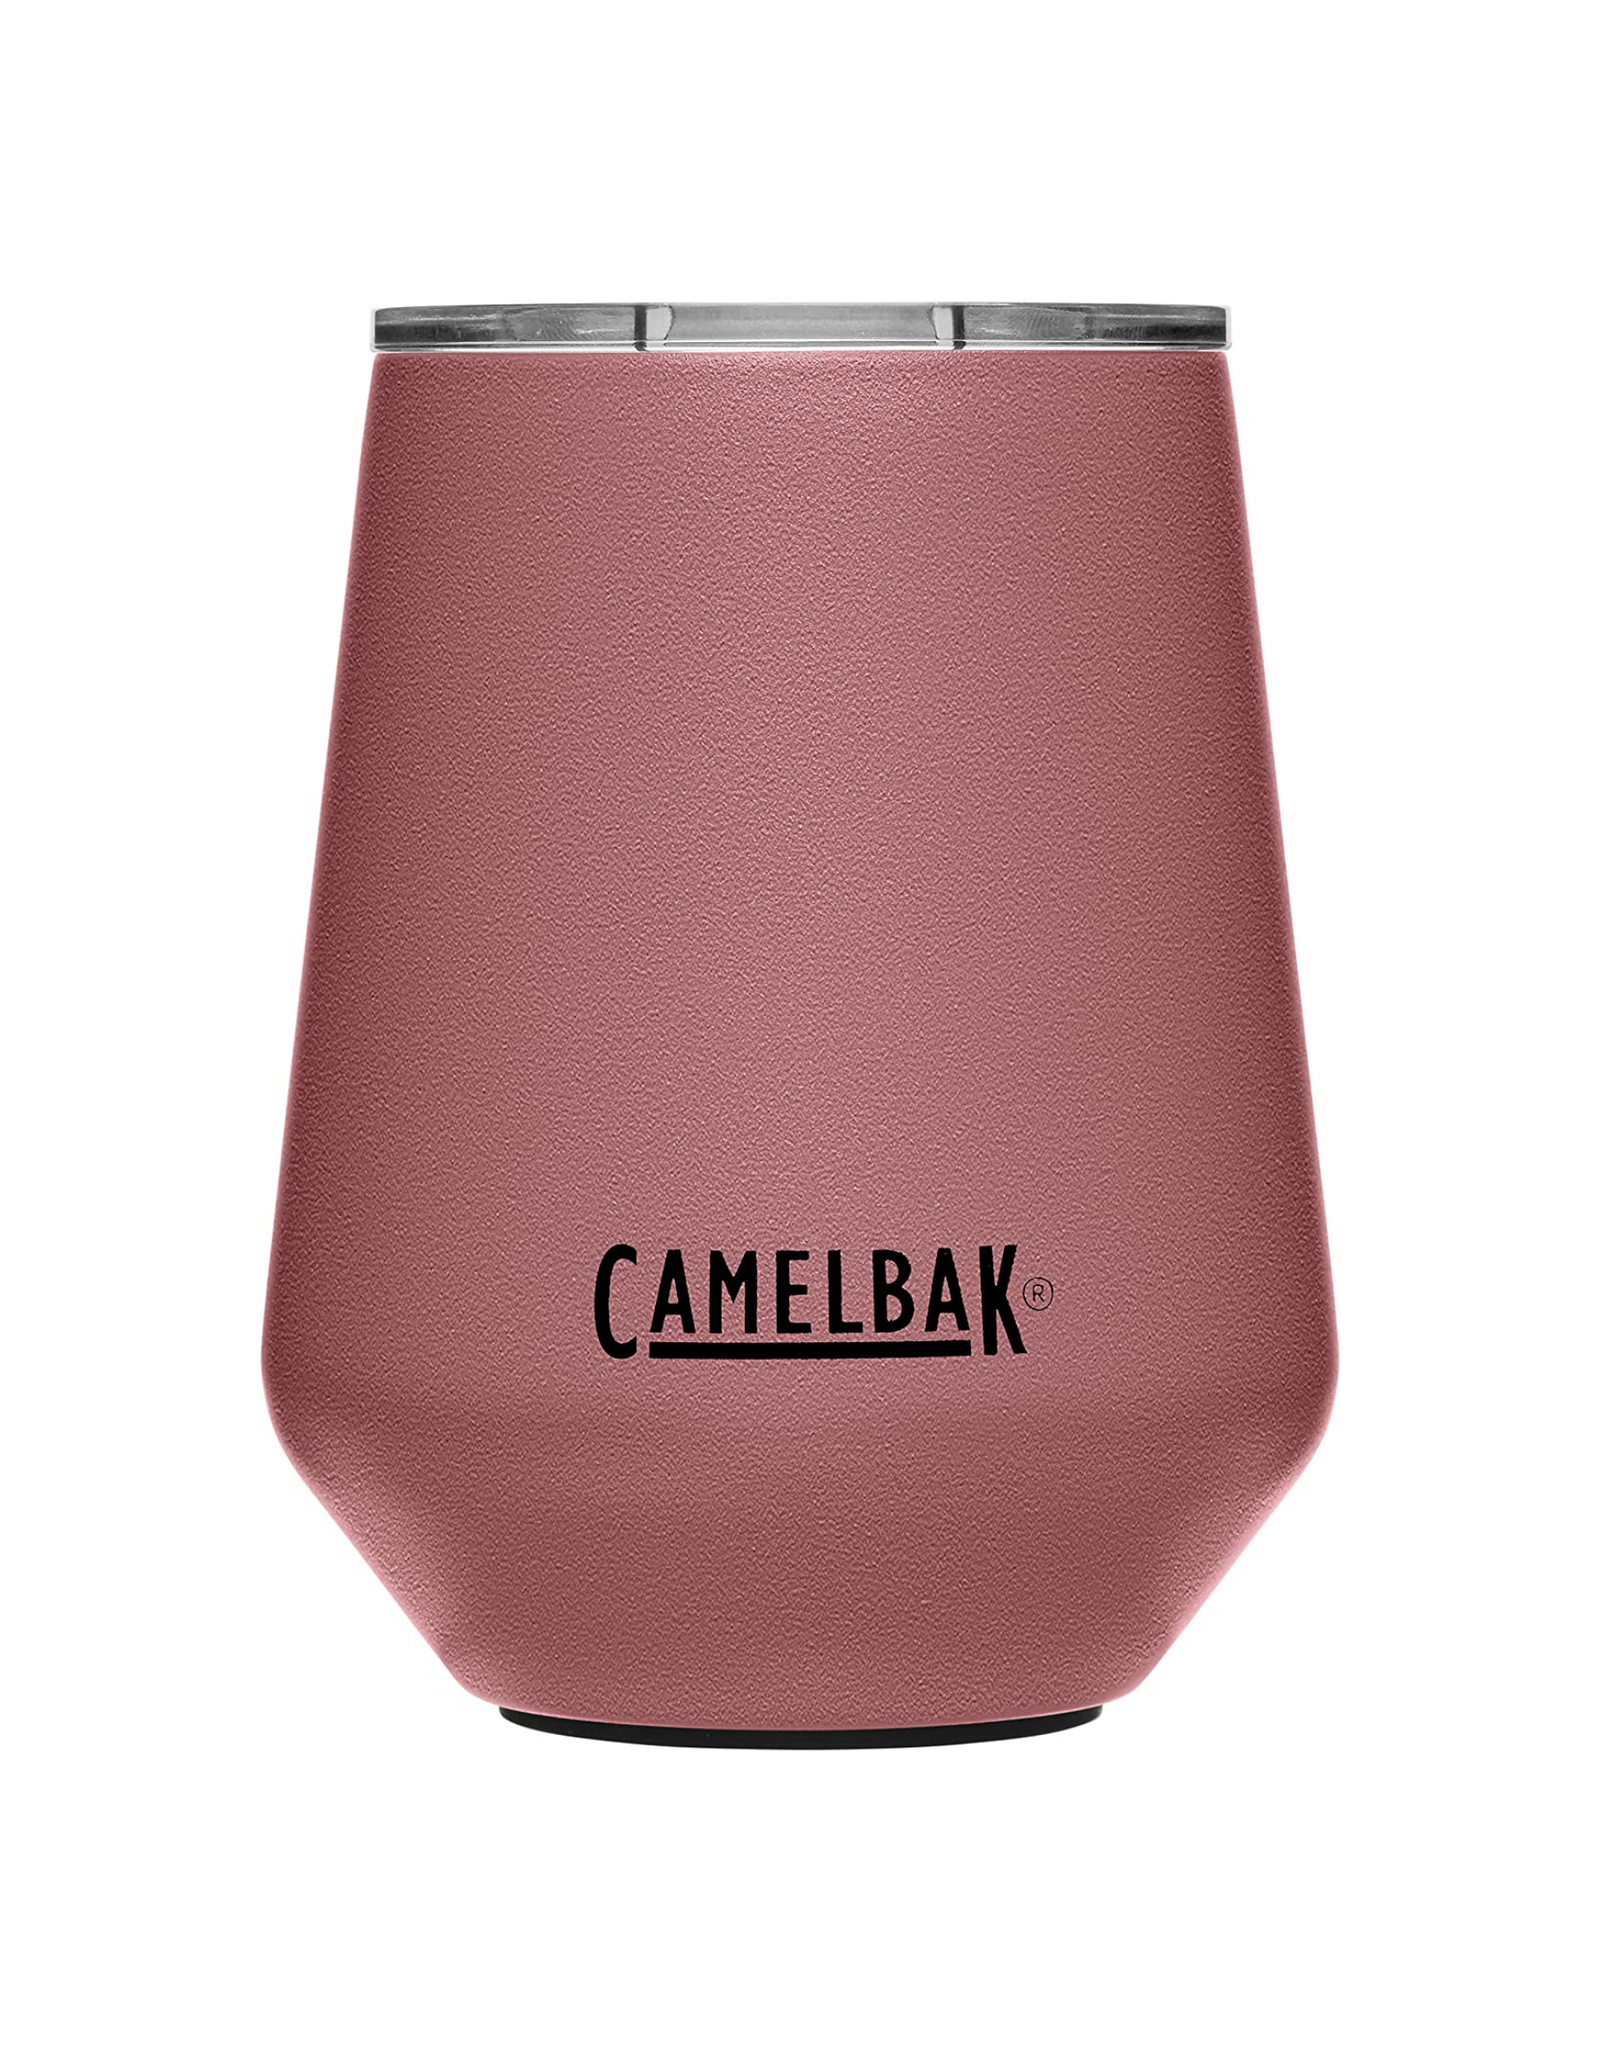 CamelBak Horizon 12 oz Wine Tumbler, Tri-Mode Lid, Insulated Stainless Steel, Terracotta Rose